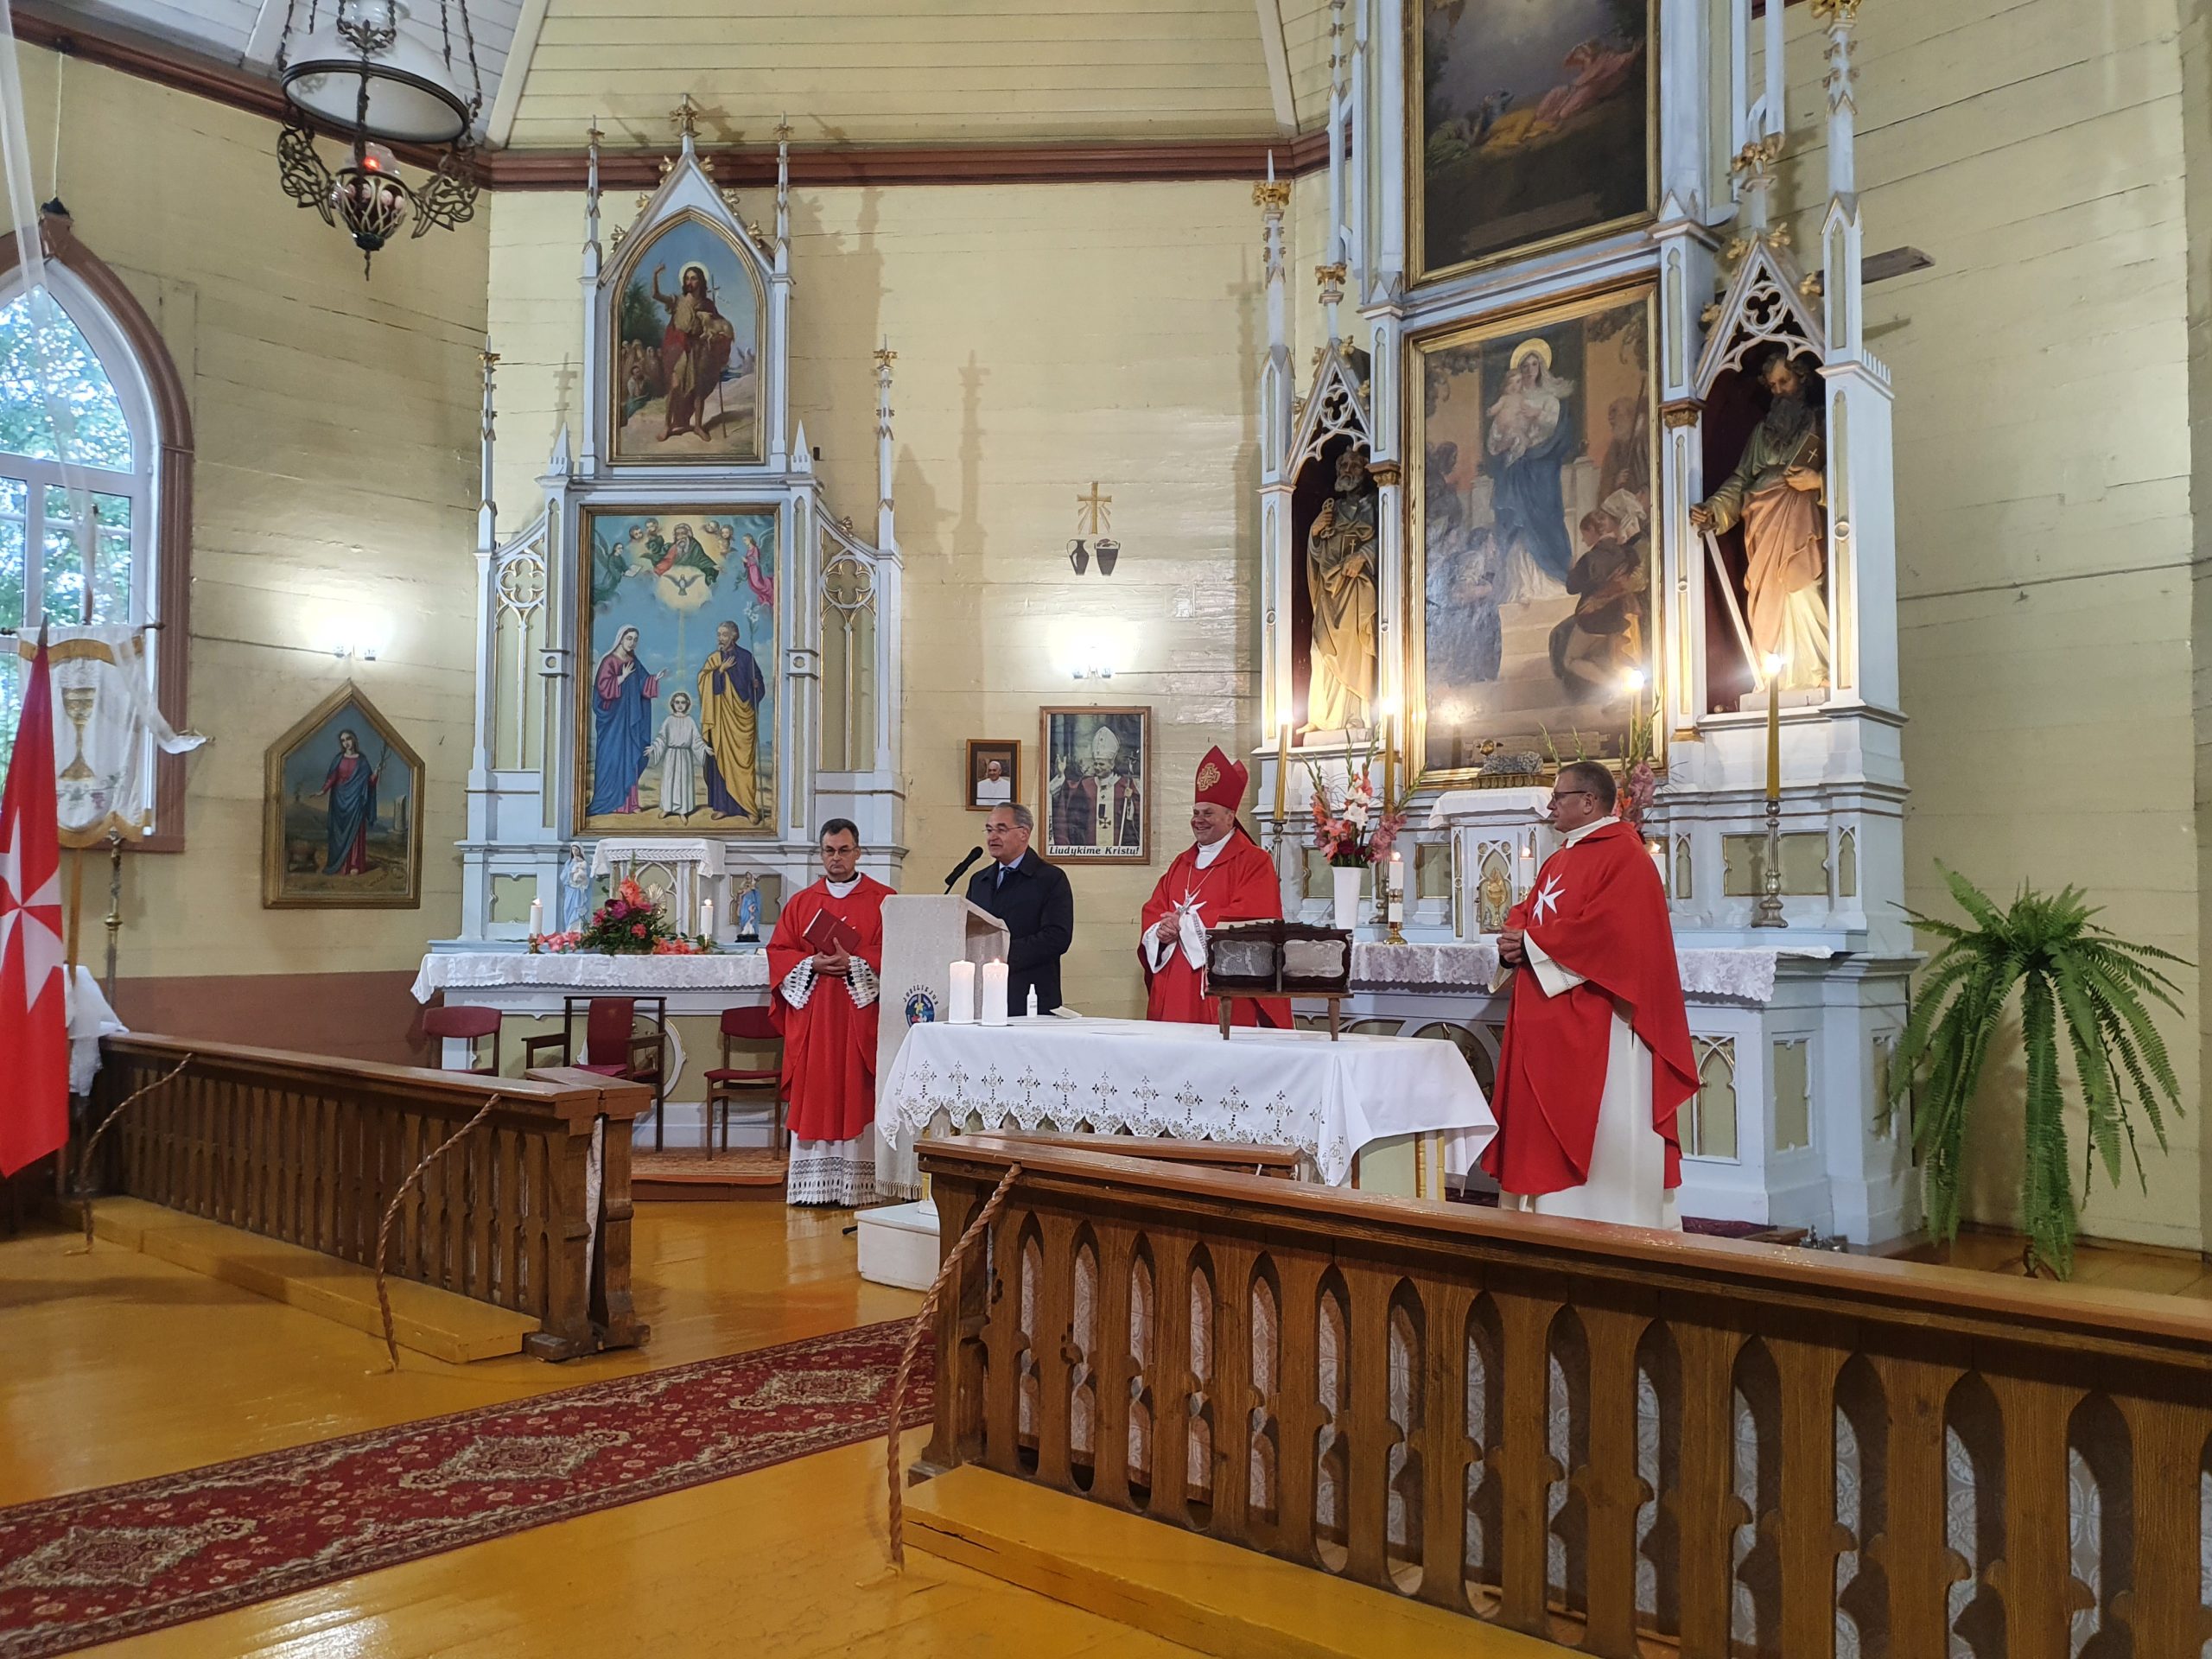 L’Organisation de Secours de l’Ordre de Malte en Lituanie fête ses 30 ans d’activités en présence du Grand Hospitalier